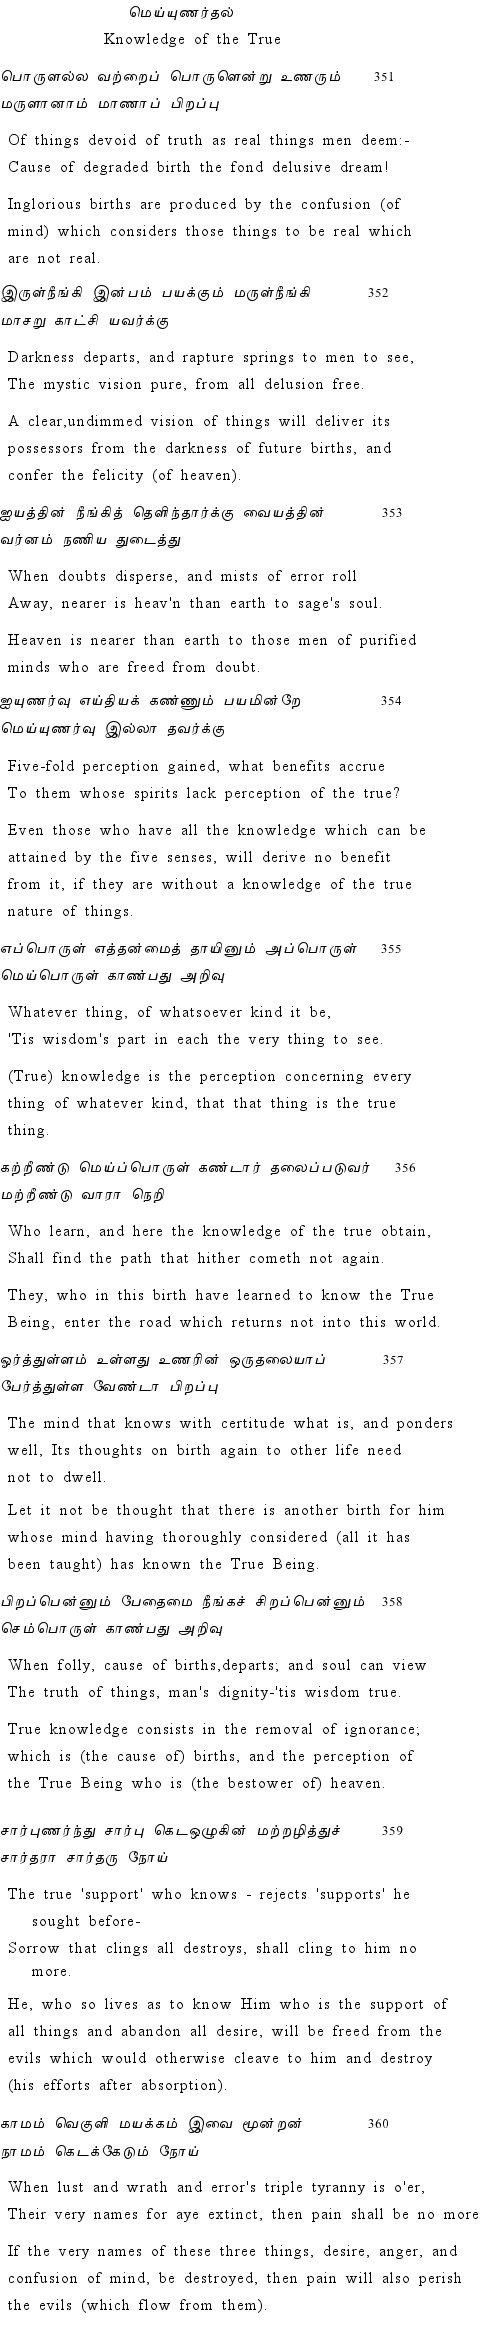 Text of Adhikaram 36